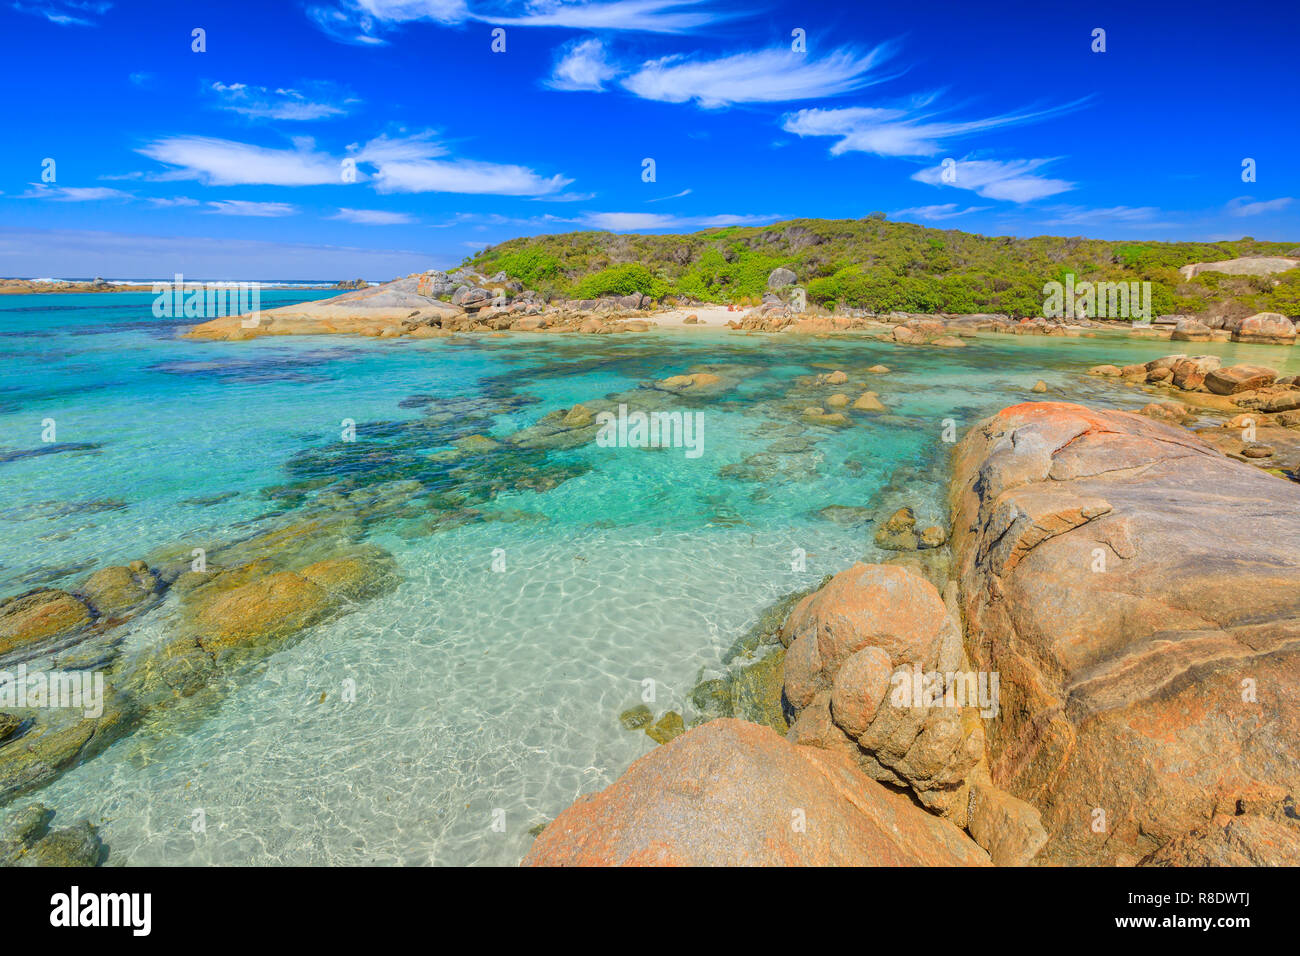 William Bay National Park, regione della Danimarca, Western Australia. Acque tropicali turchesi di Madfish spiaggia circondata da formazioni rocciose. Sunny blue sky. Popolare destinazione estiva in Australia. Foto Stock